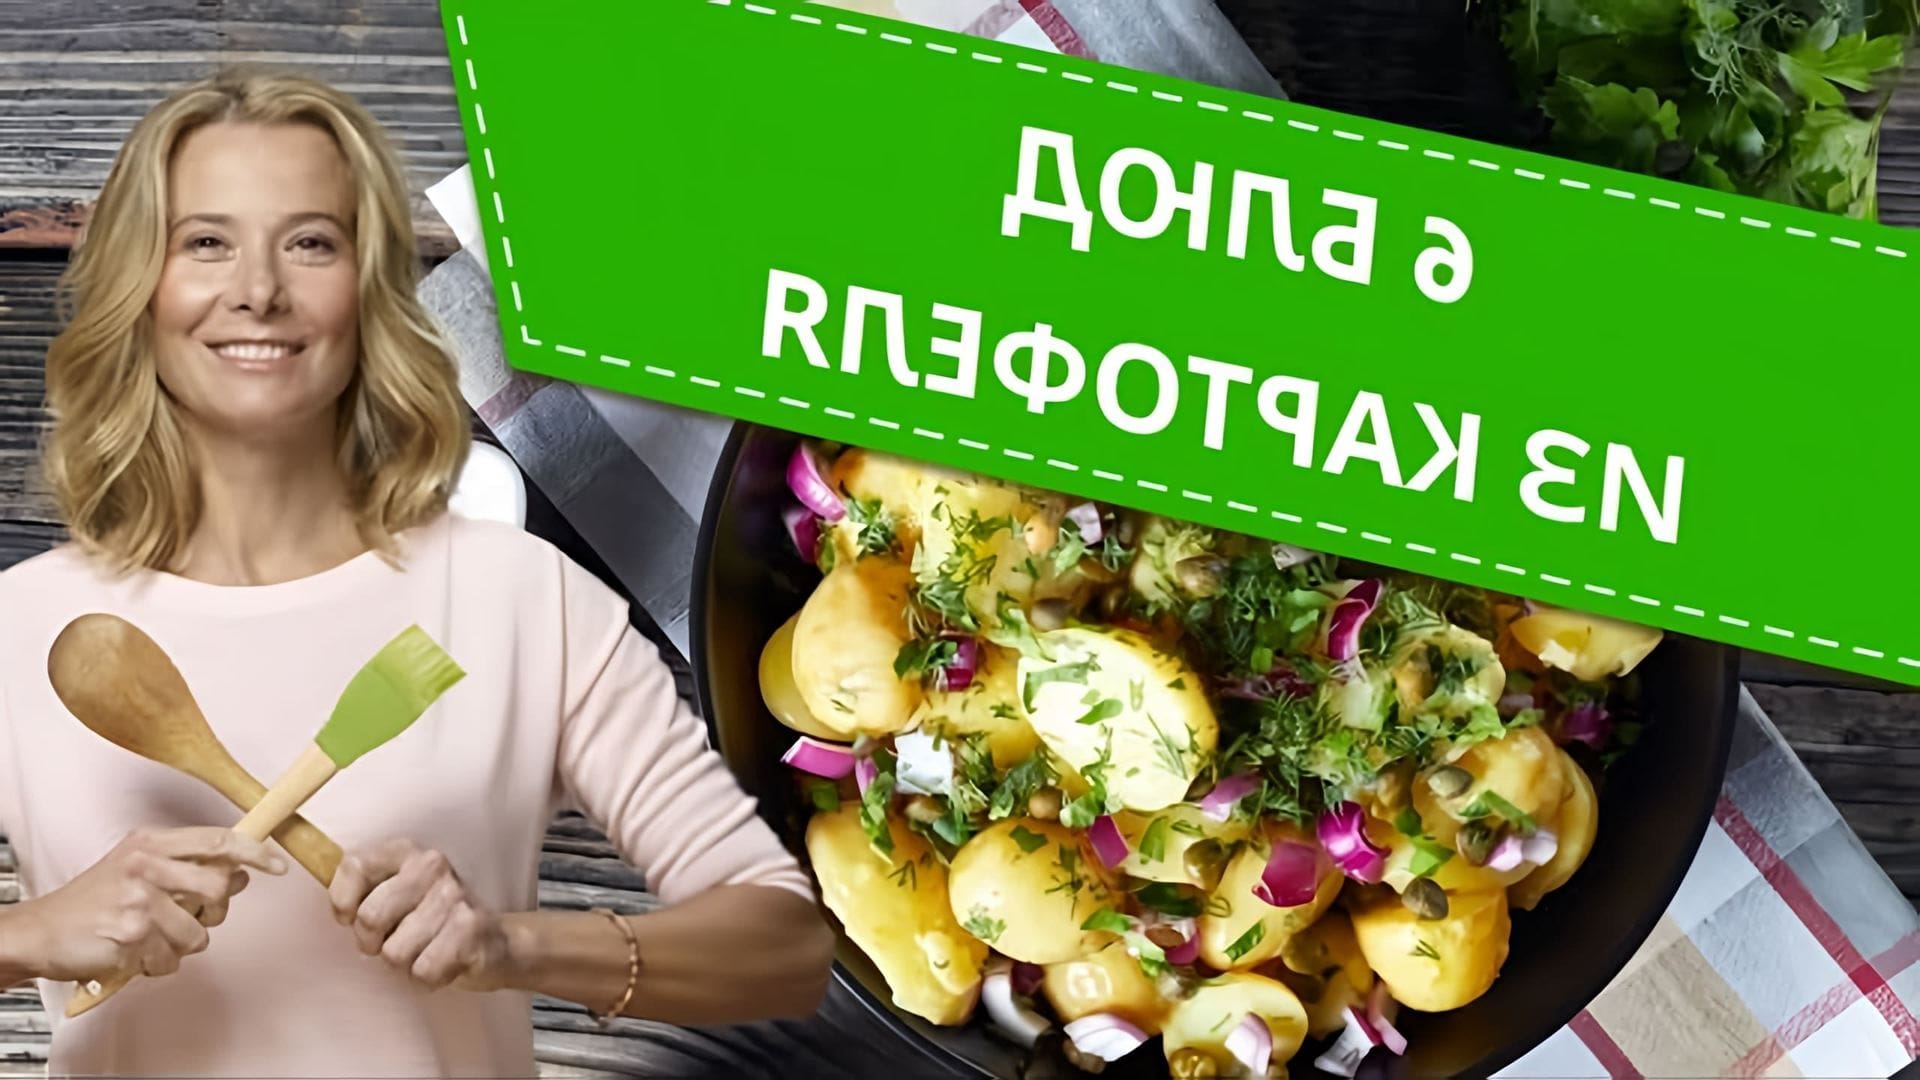 Что приготовить из картофеля? Предлагаем вам 6 рецептов от Юлии Высоцкой, которые понравятся всей семье! 00:00... 